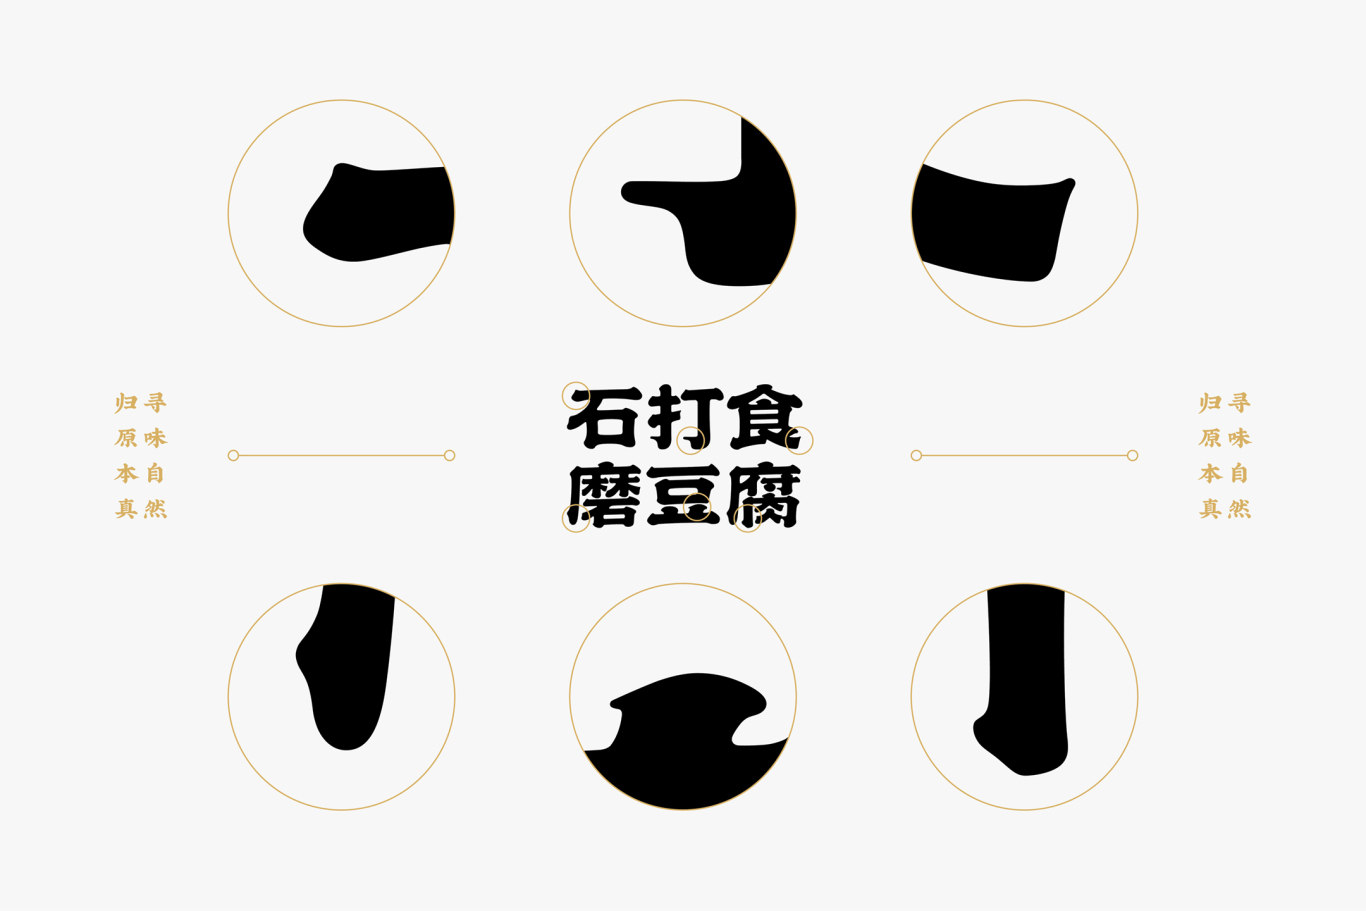 石打食磨豆腐餐飲品牌形象設計圖3